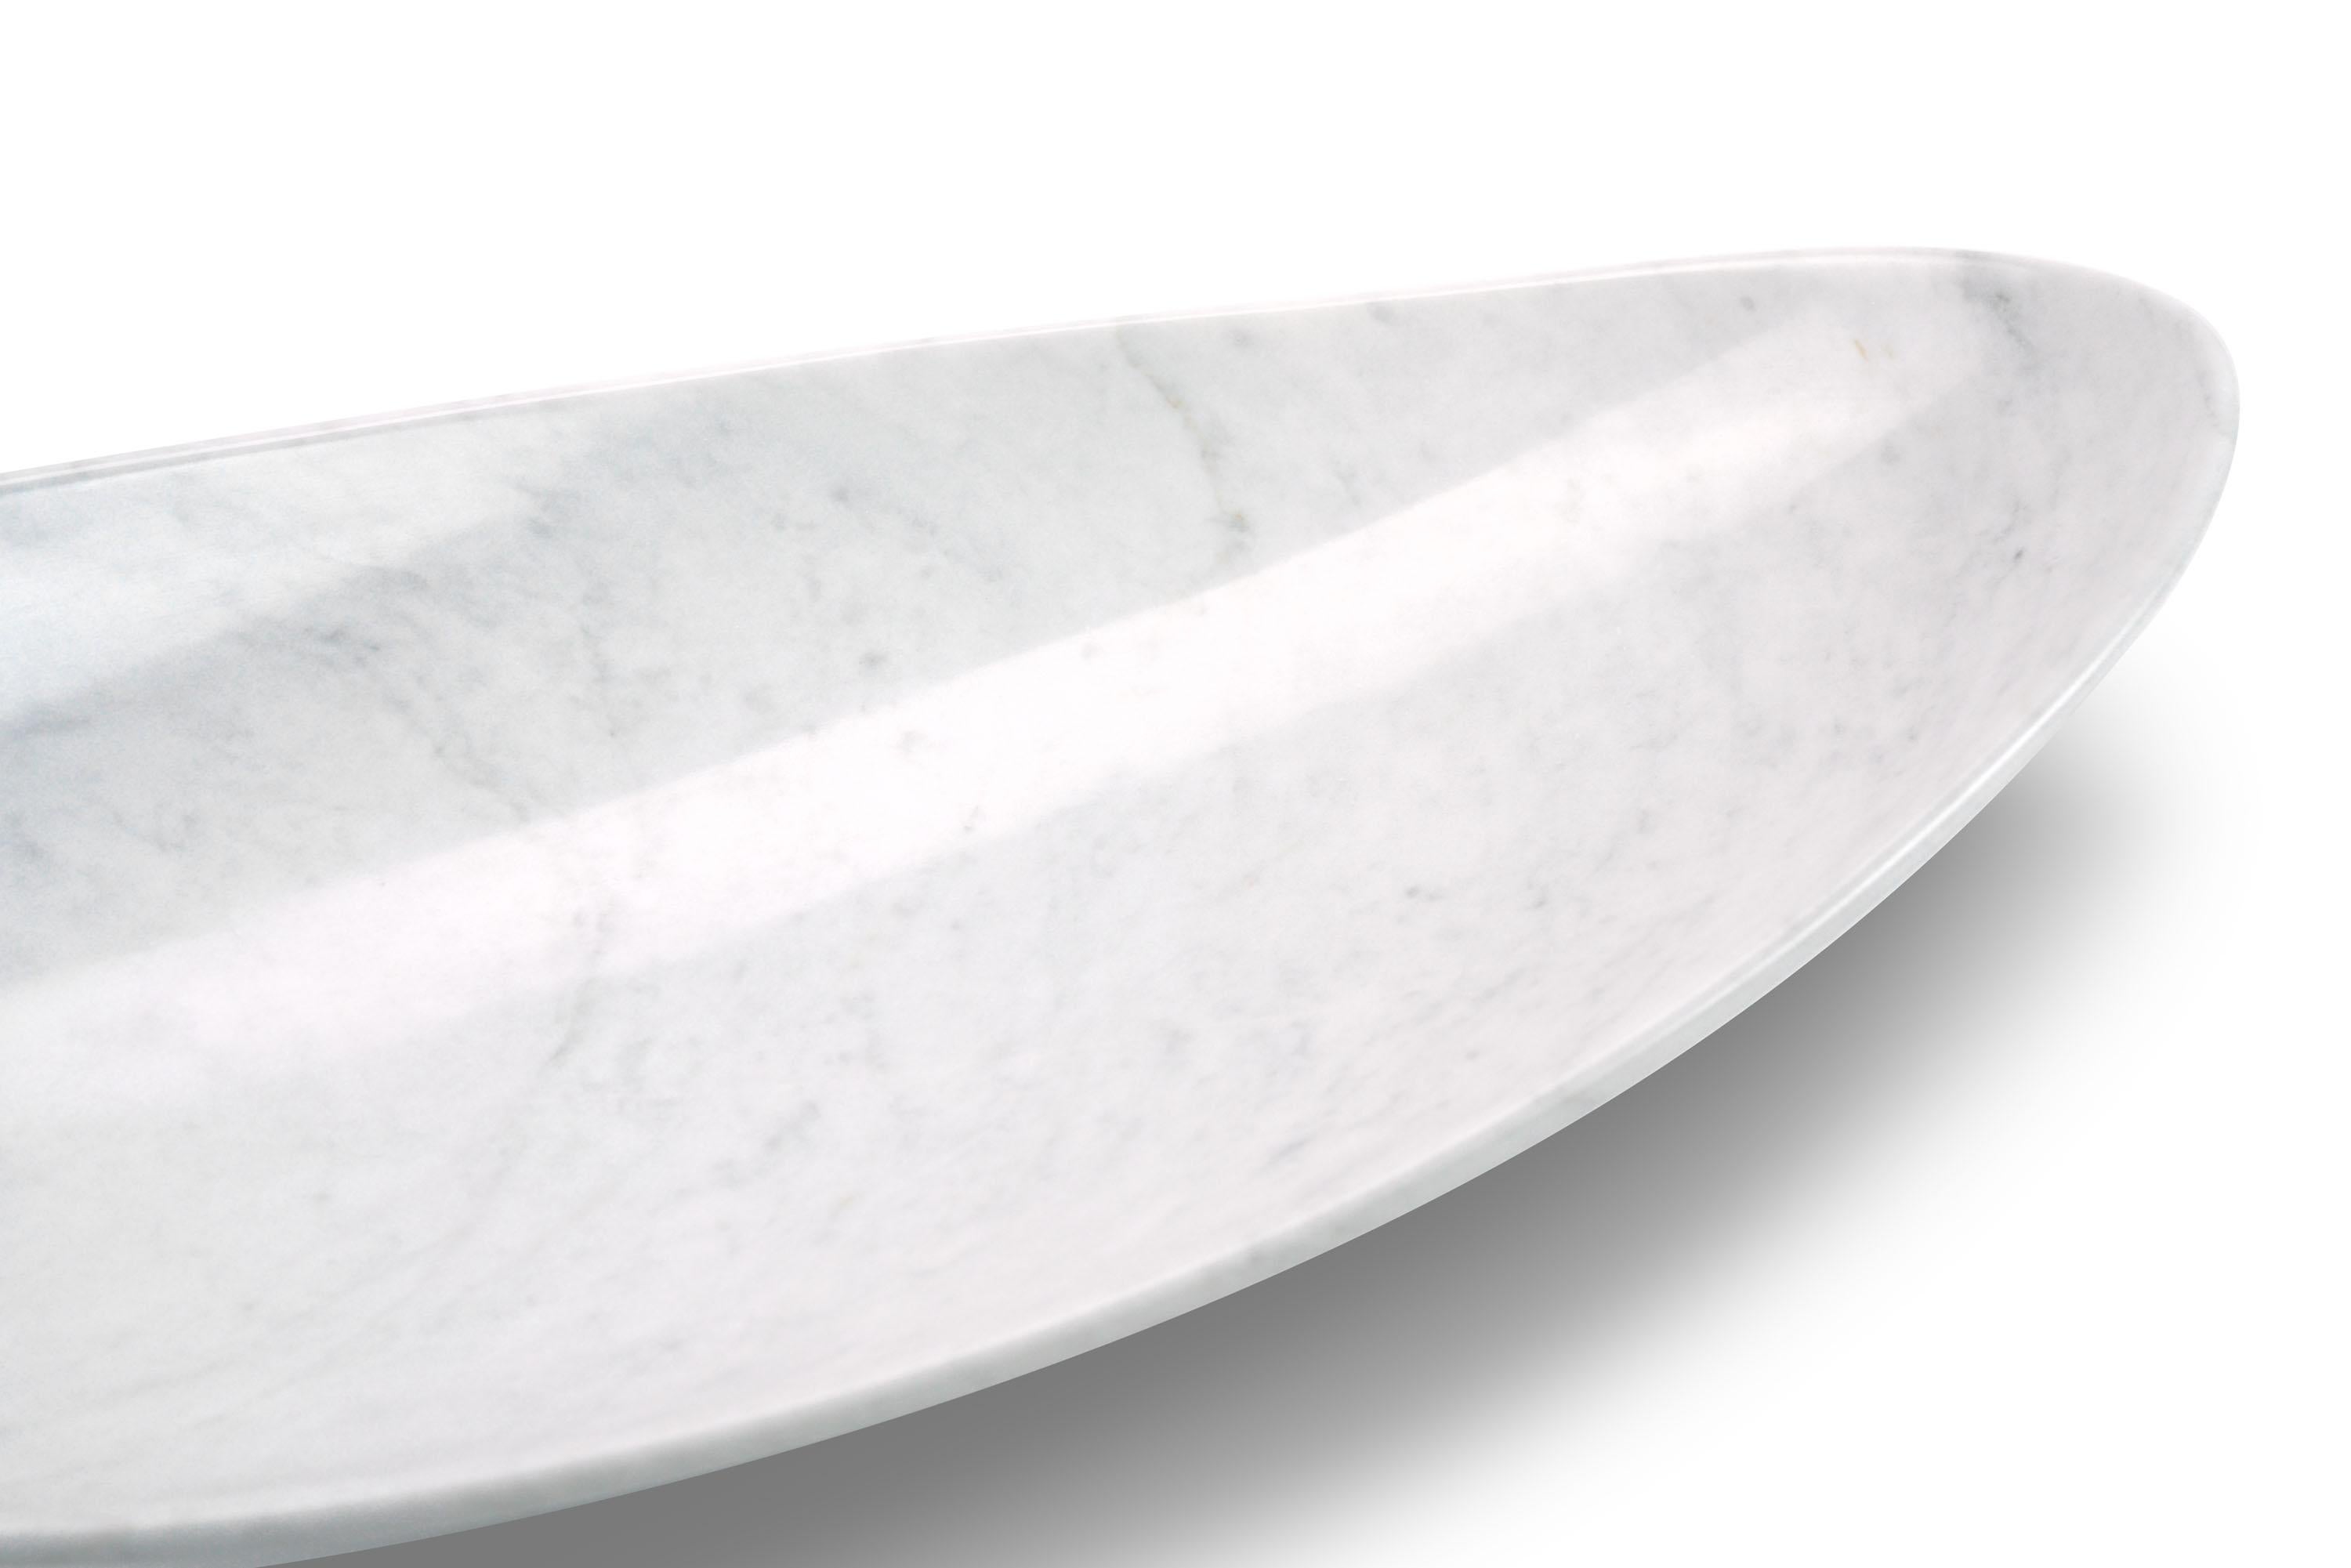 Die Schale wurde von Hand aus einem massiven Block aus weißem Carrara-Marmor geformt. Polieren. 

Abmessungen: Bigli 56 x  W 27 x  H 12 cm. Medium L 45 x B 22 x H 10 cm.  Klein L 35 x  B 17 x H 8 cm.
Erhältlich in verschiedenen Marmorsorten, Onyx